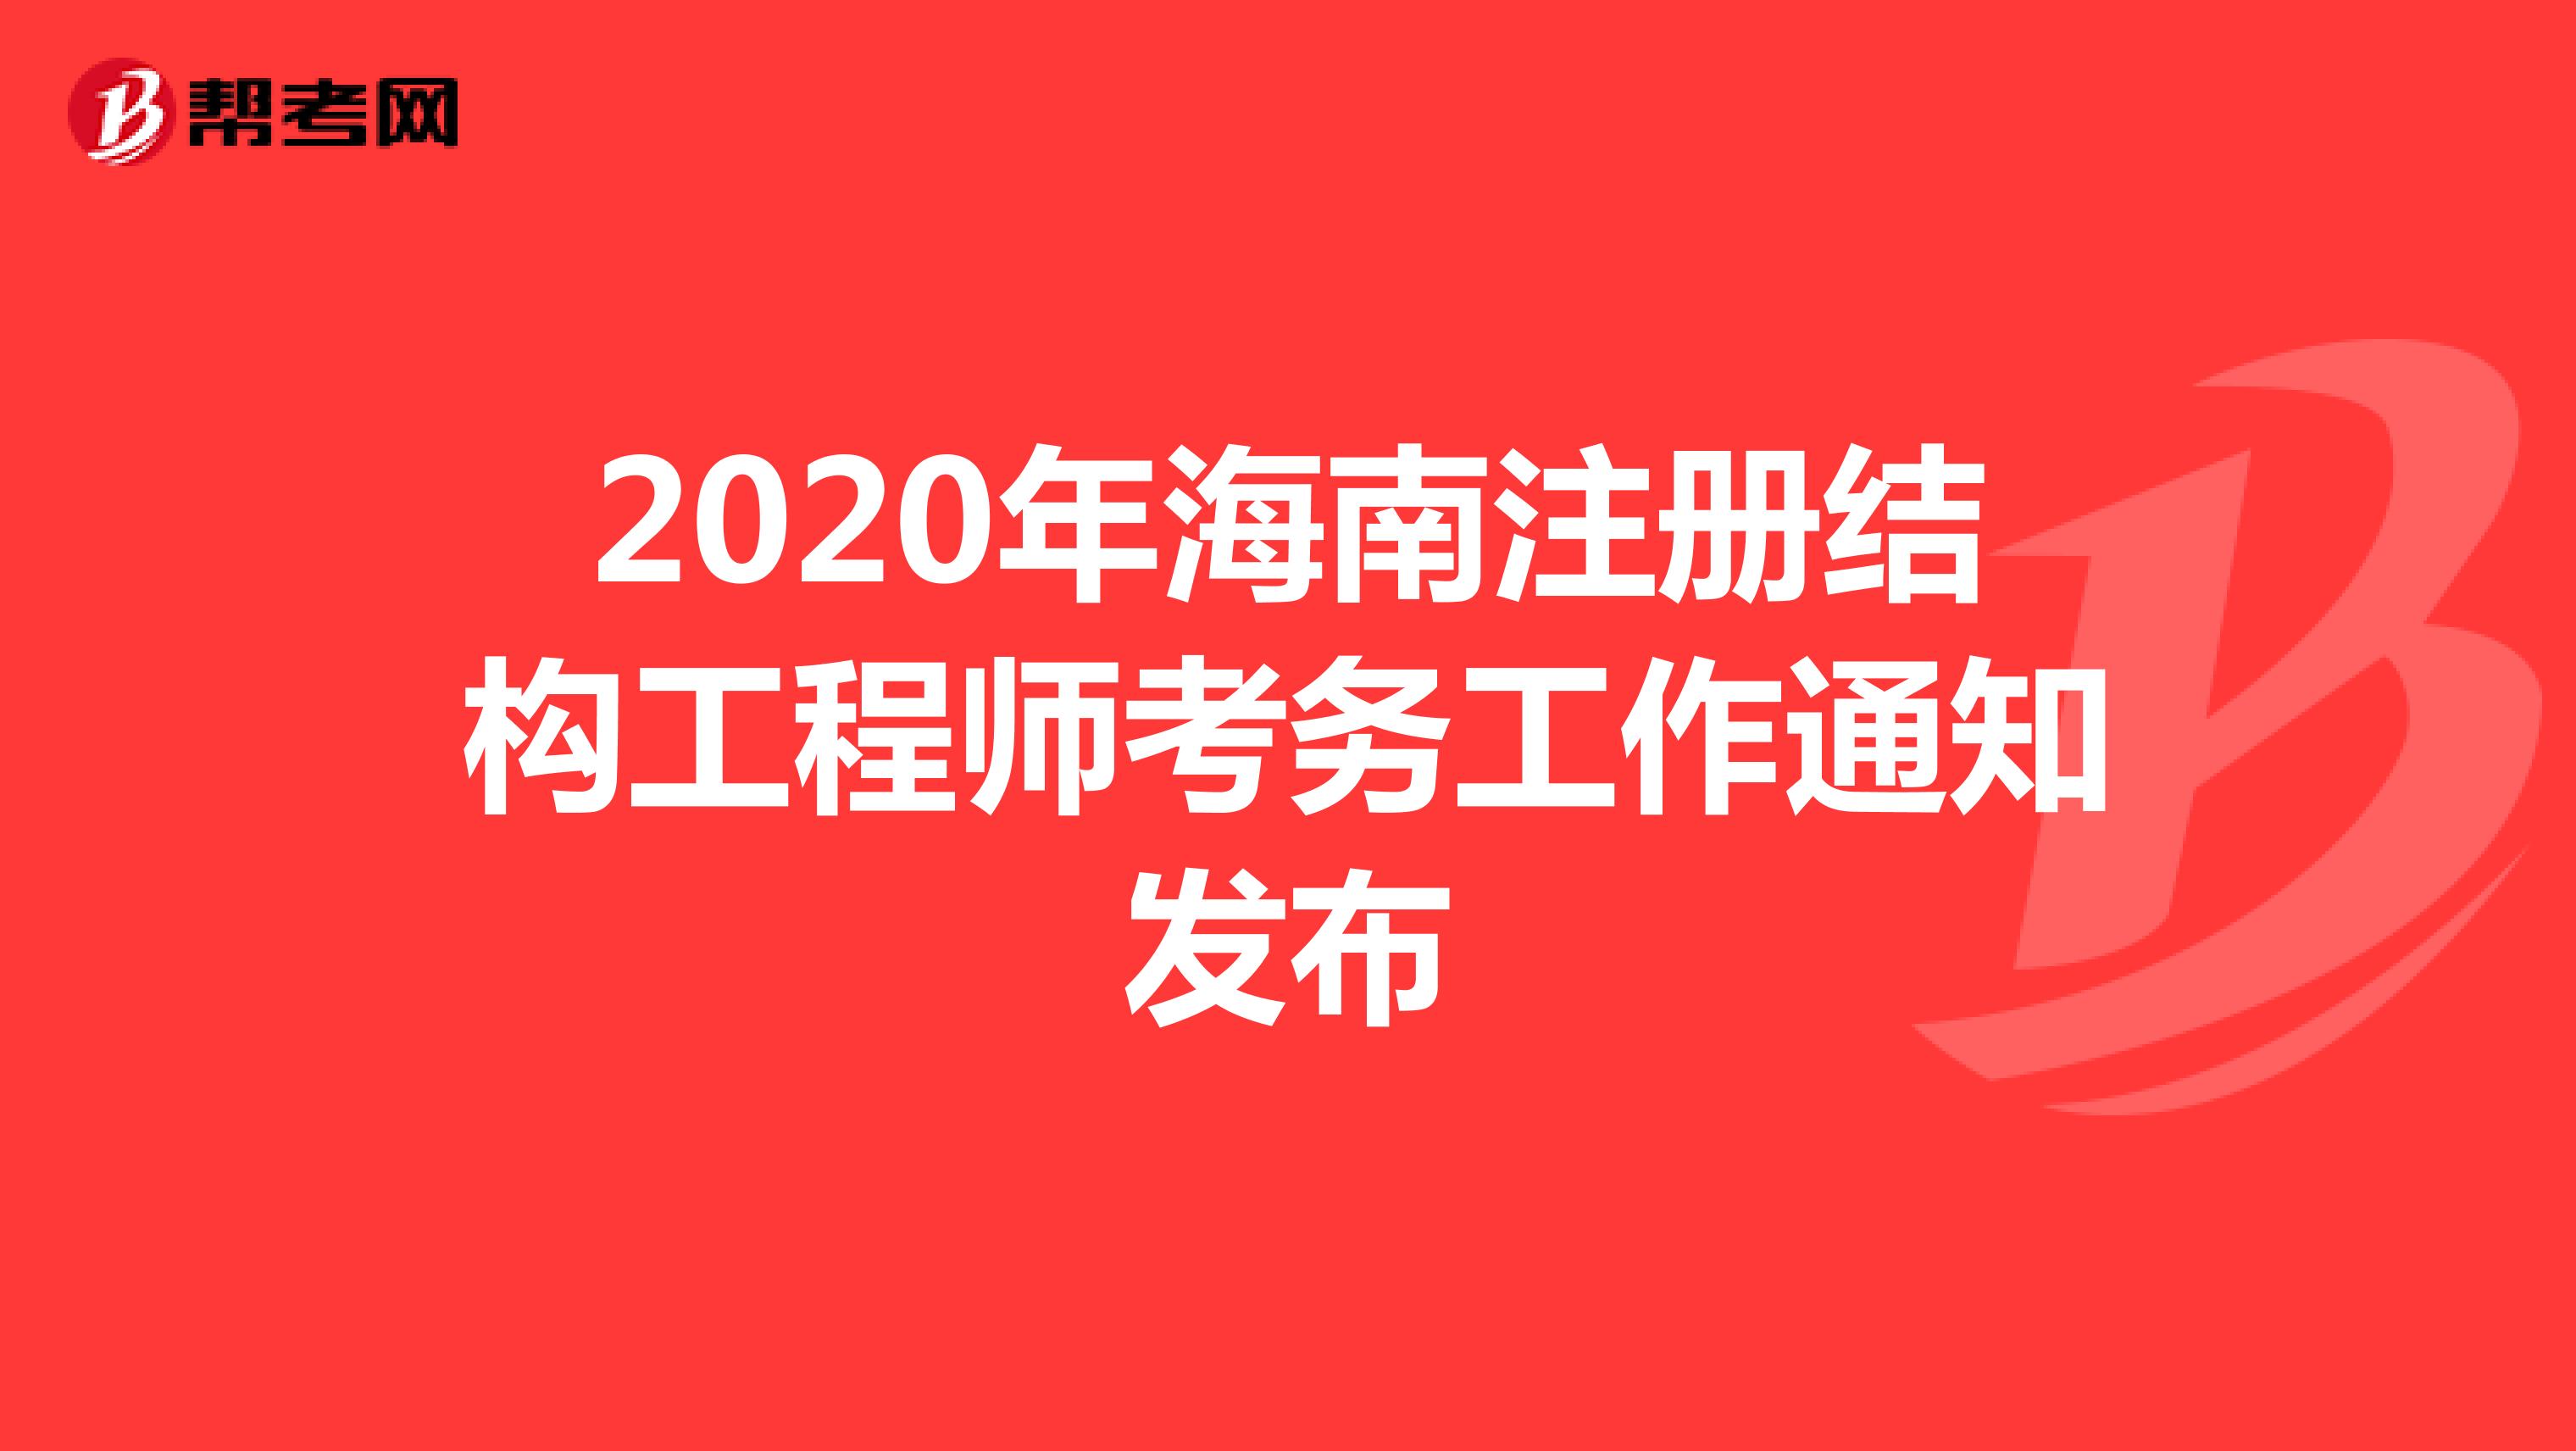 2020年海南注册结构工程师考务工作通知发布